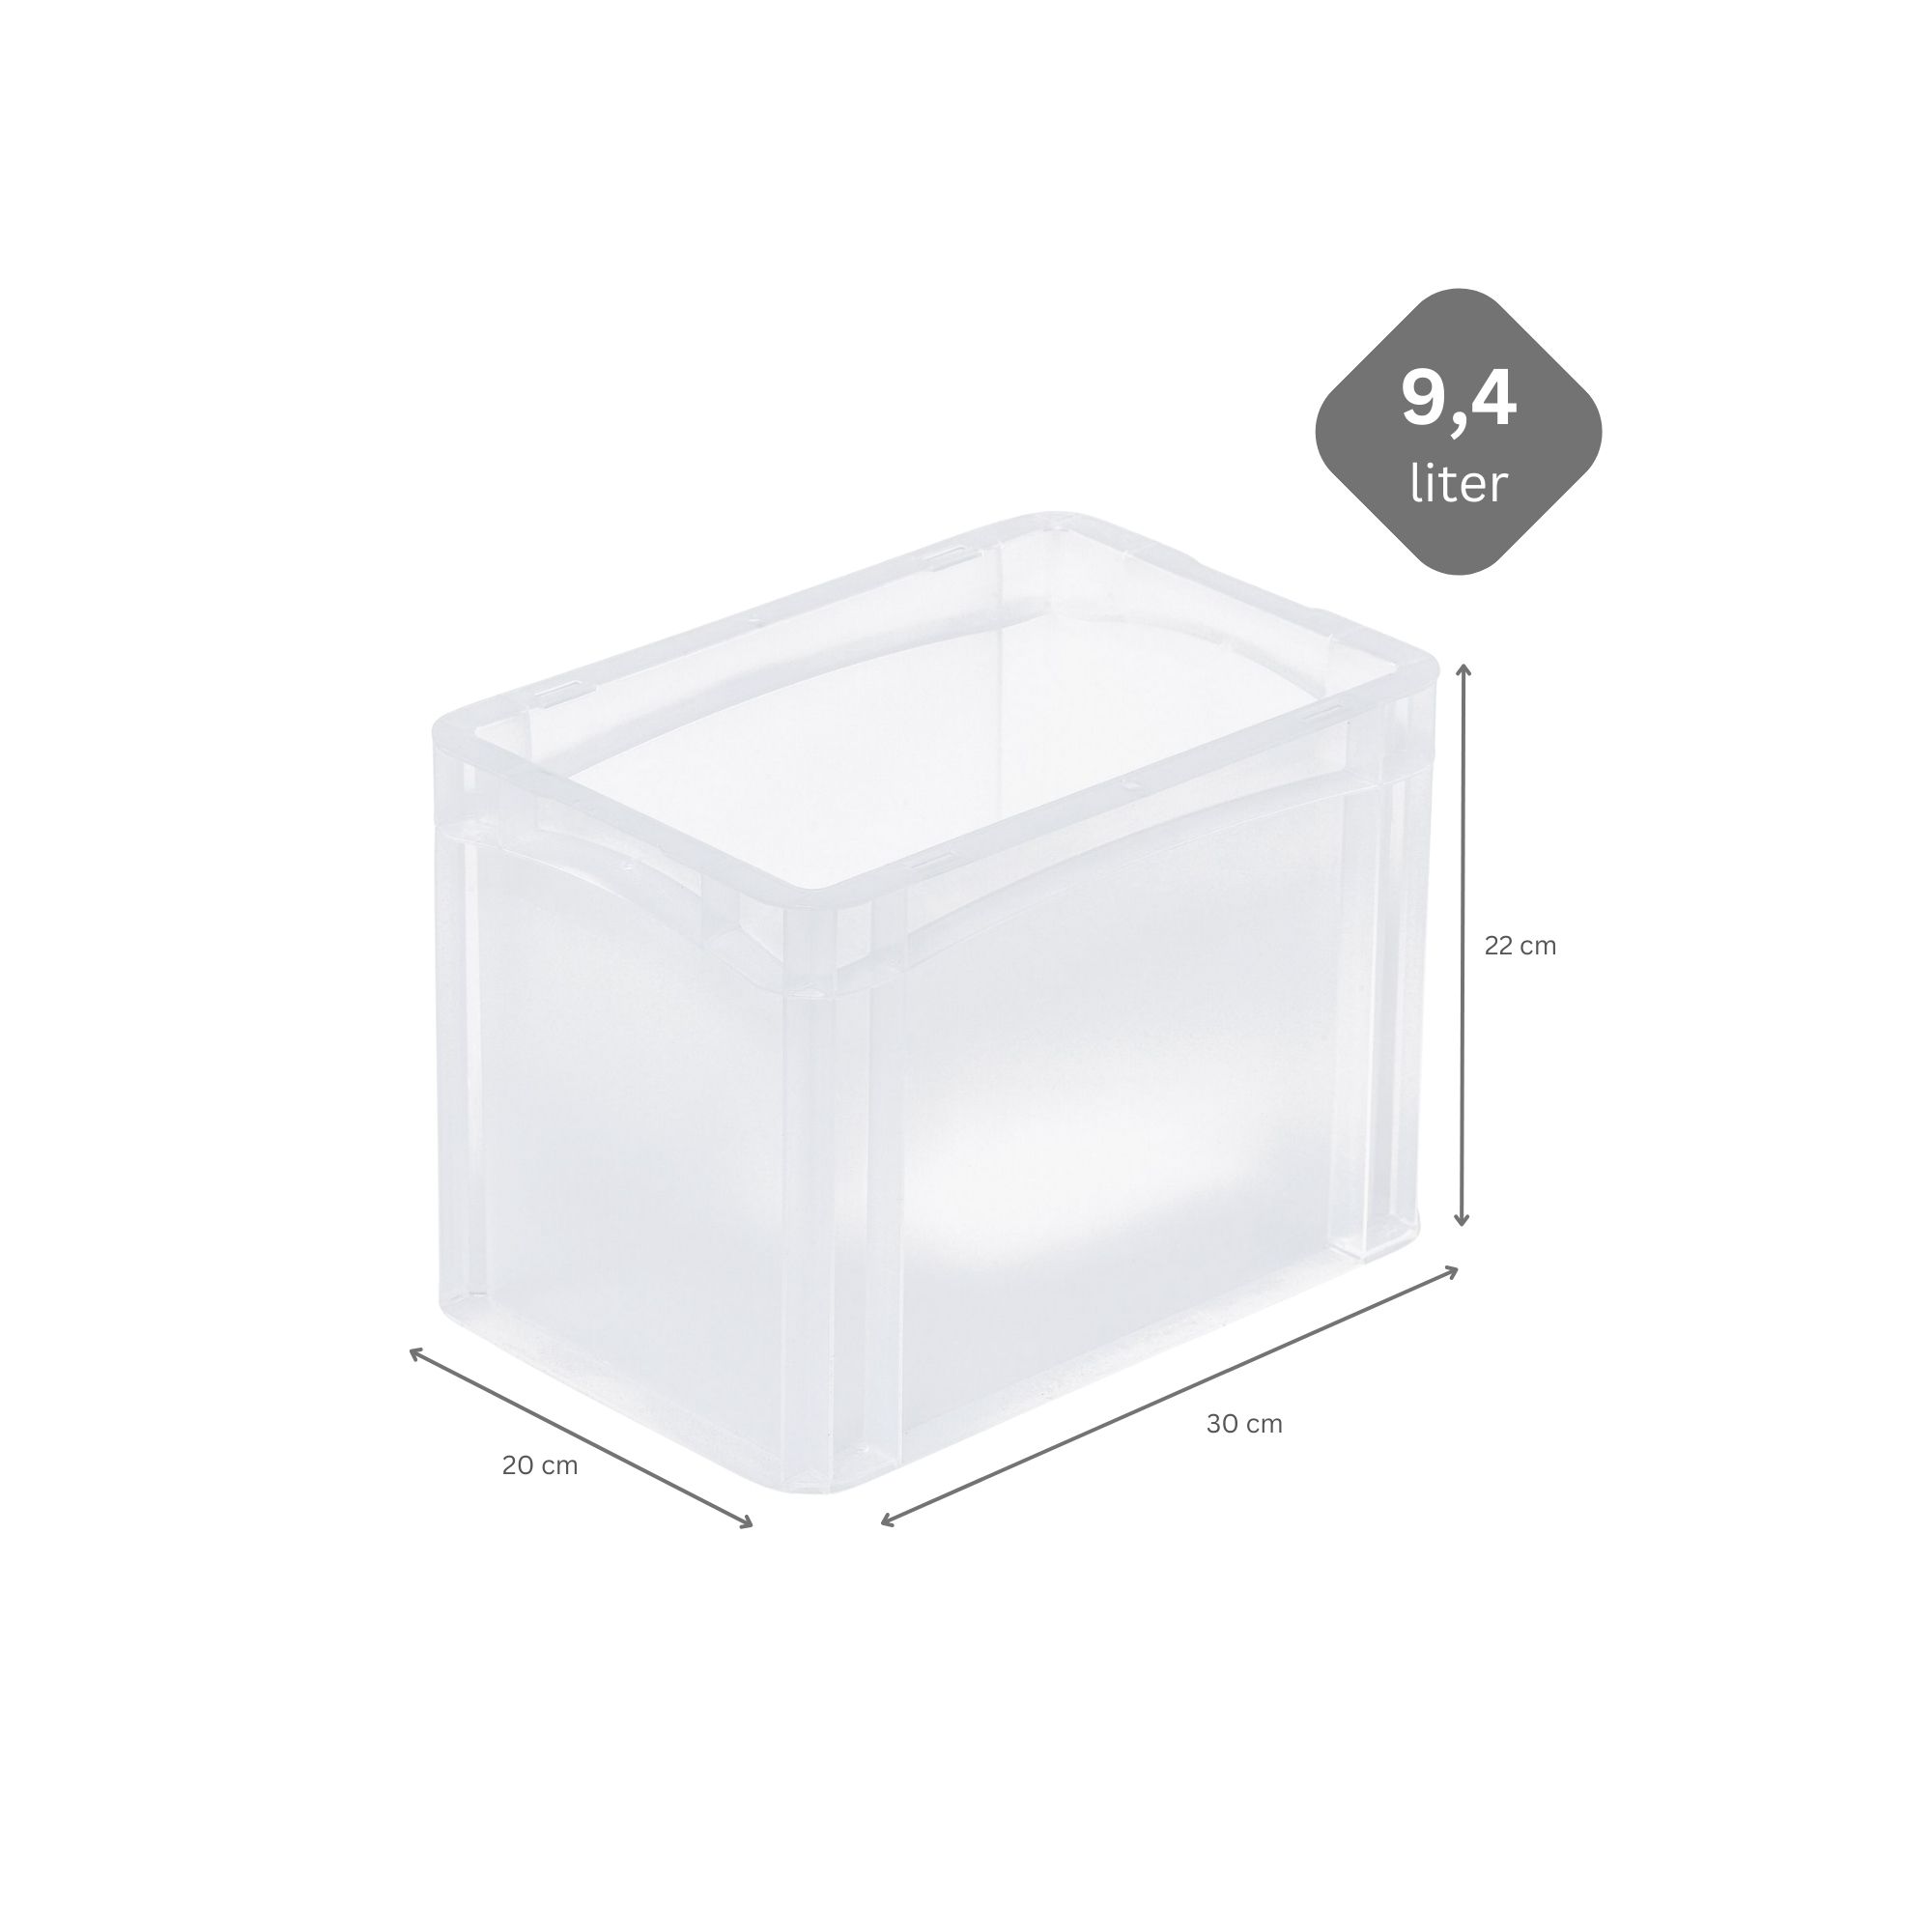 Transparenter Eurobehälter BasicLine mit geschlossenem Griff | HxBxT 22x20x30cm | 9,4 Liter | Eurobox, Transportbox, Transportbehälter, Stapelbehälter